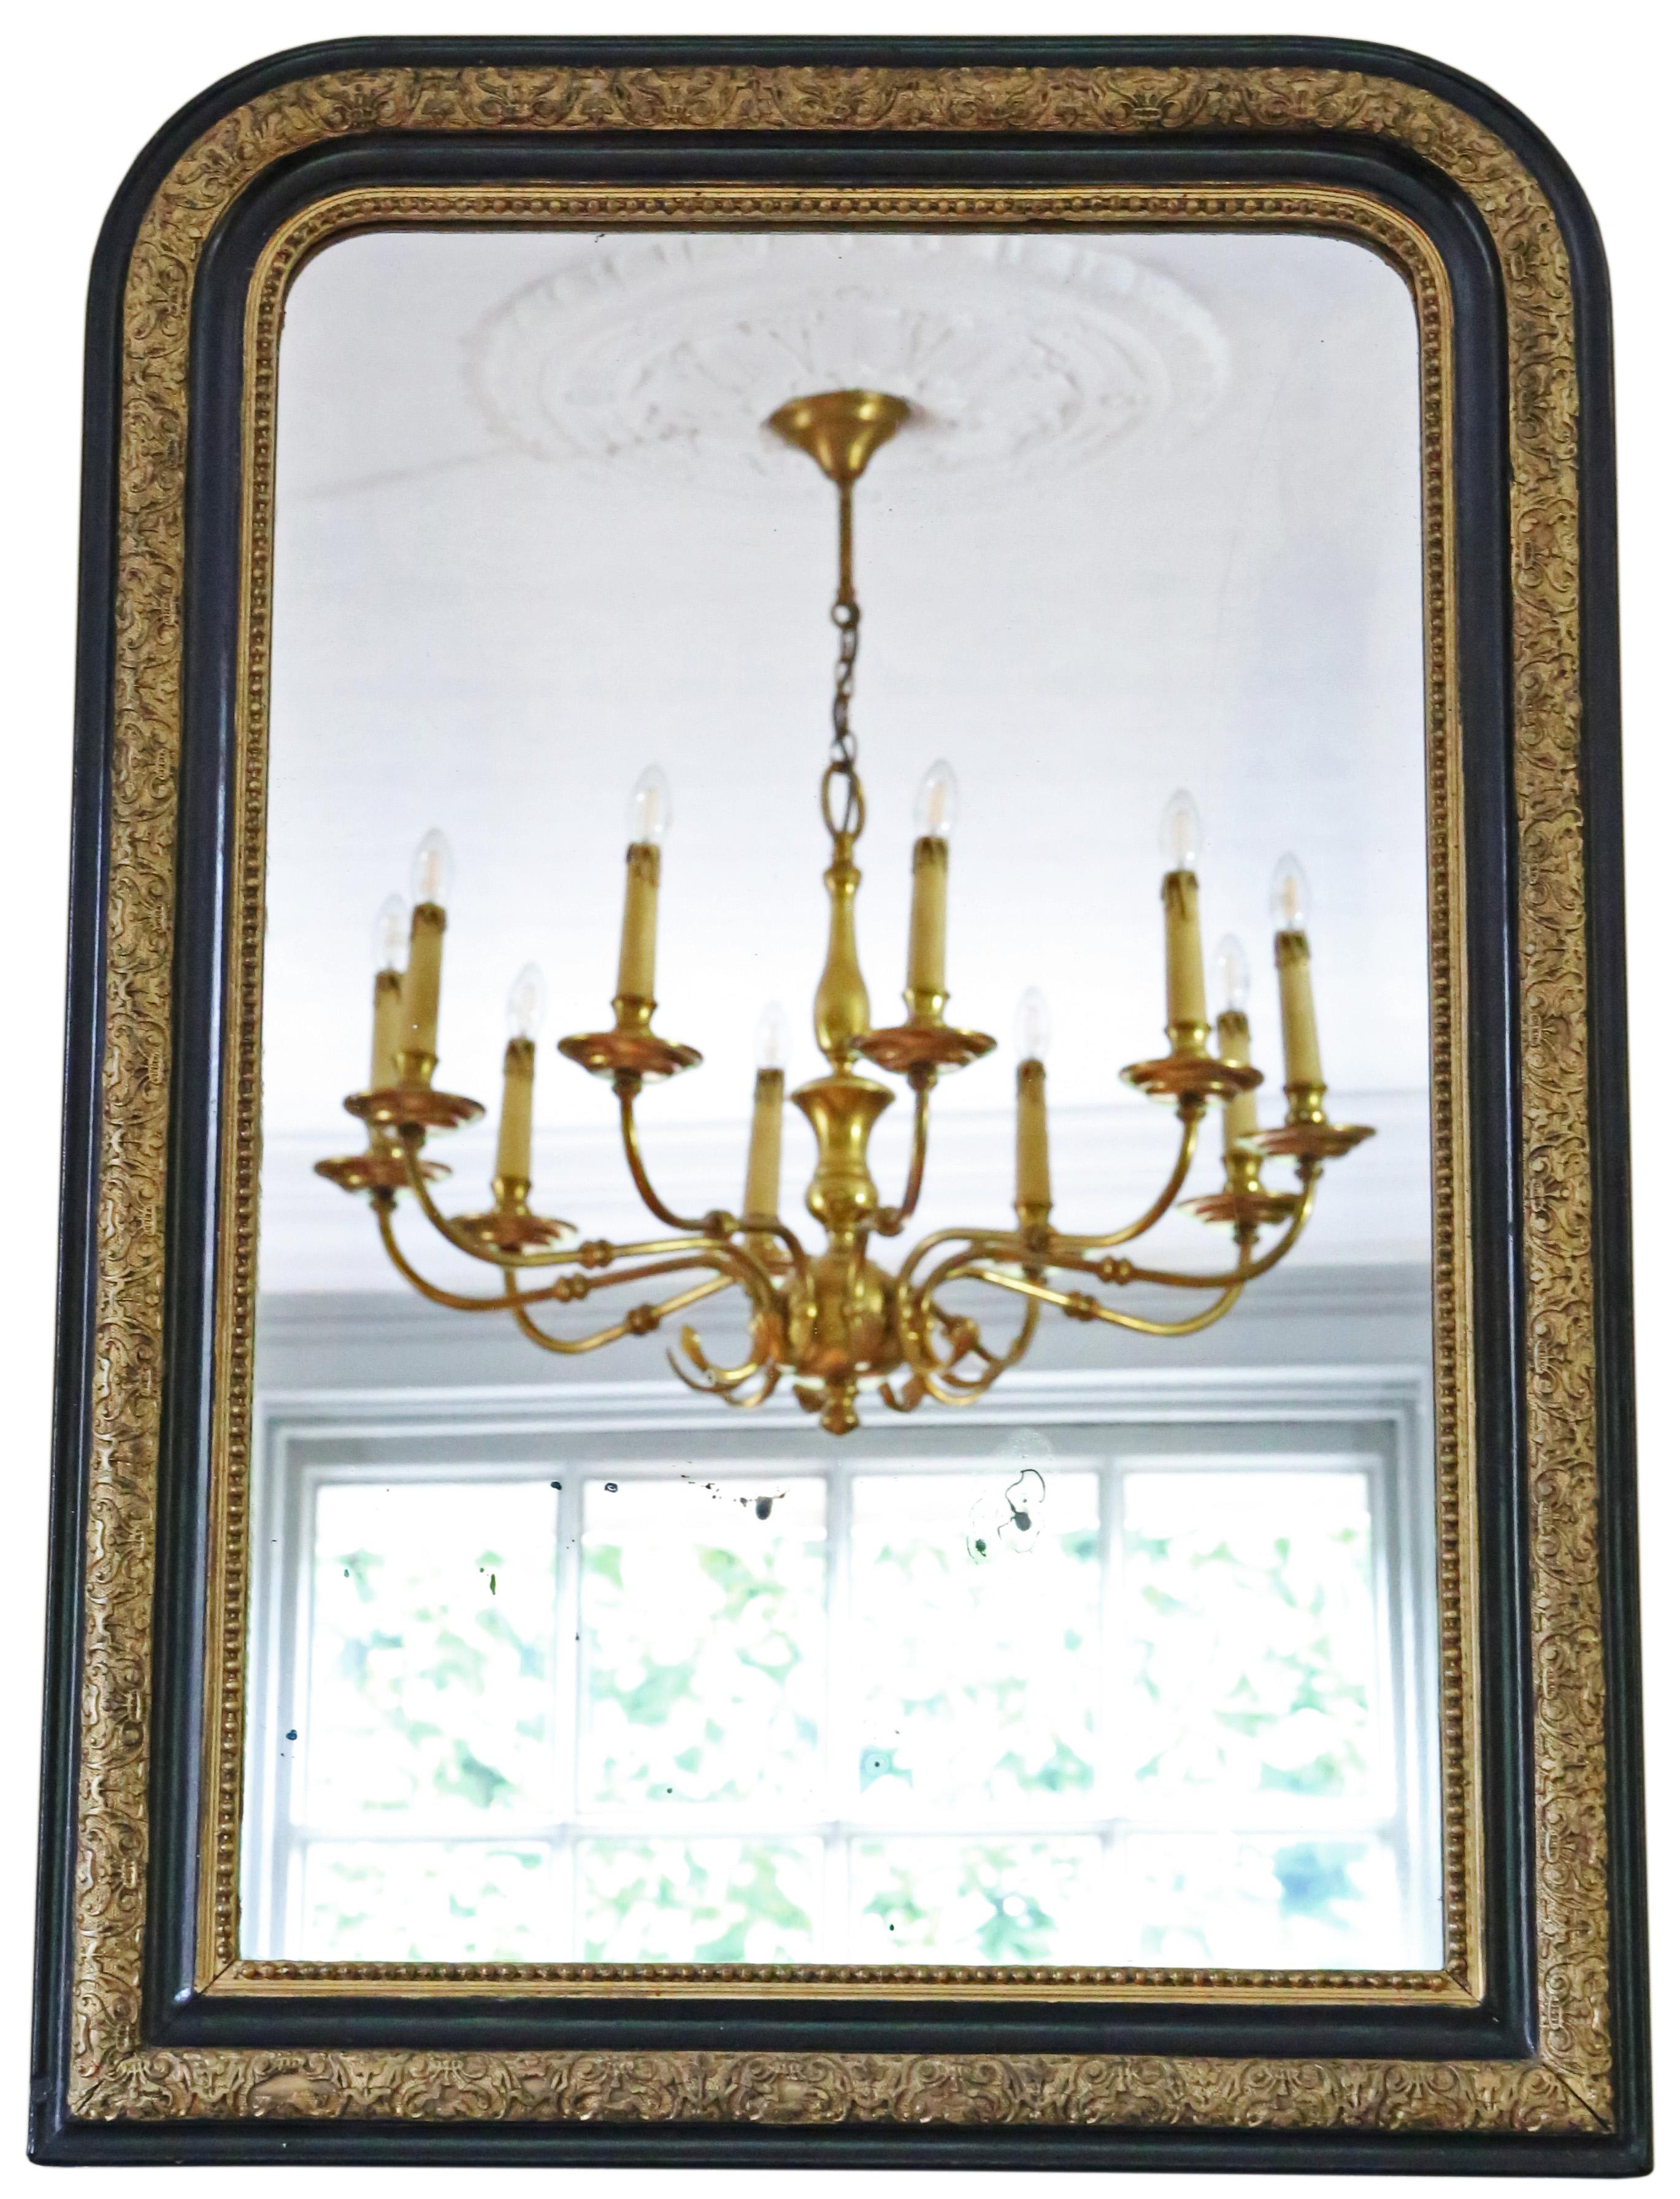 Impressionnant miroir mural ébonisé et doré de qualité supérieure, datant du 19e siècle.

Ce miroir enchanteur et peu commun est une découverte délicieuse et rare, qui lui confère une touche distinctive.

Une trouvaille remarquable, ce miroir